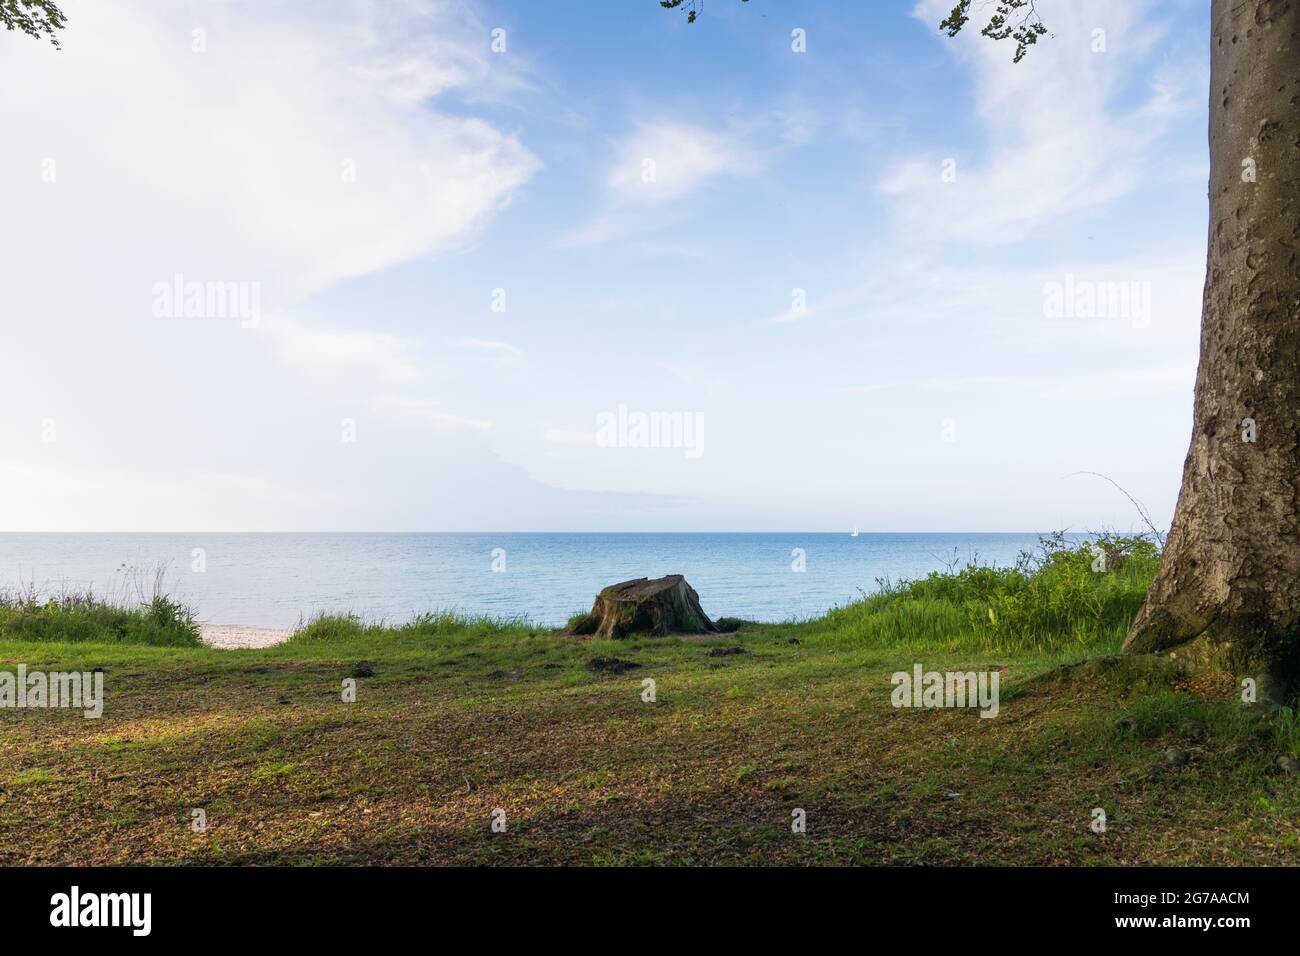 Vue sur la mer sur la côte de Stohl, mer Baltique, Stohl, Allemagne. Banque D'Images